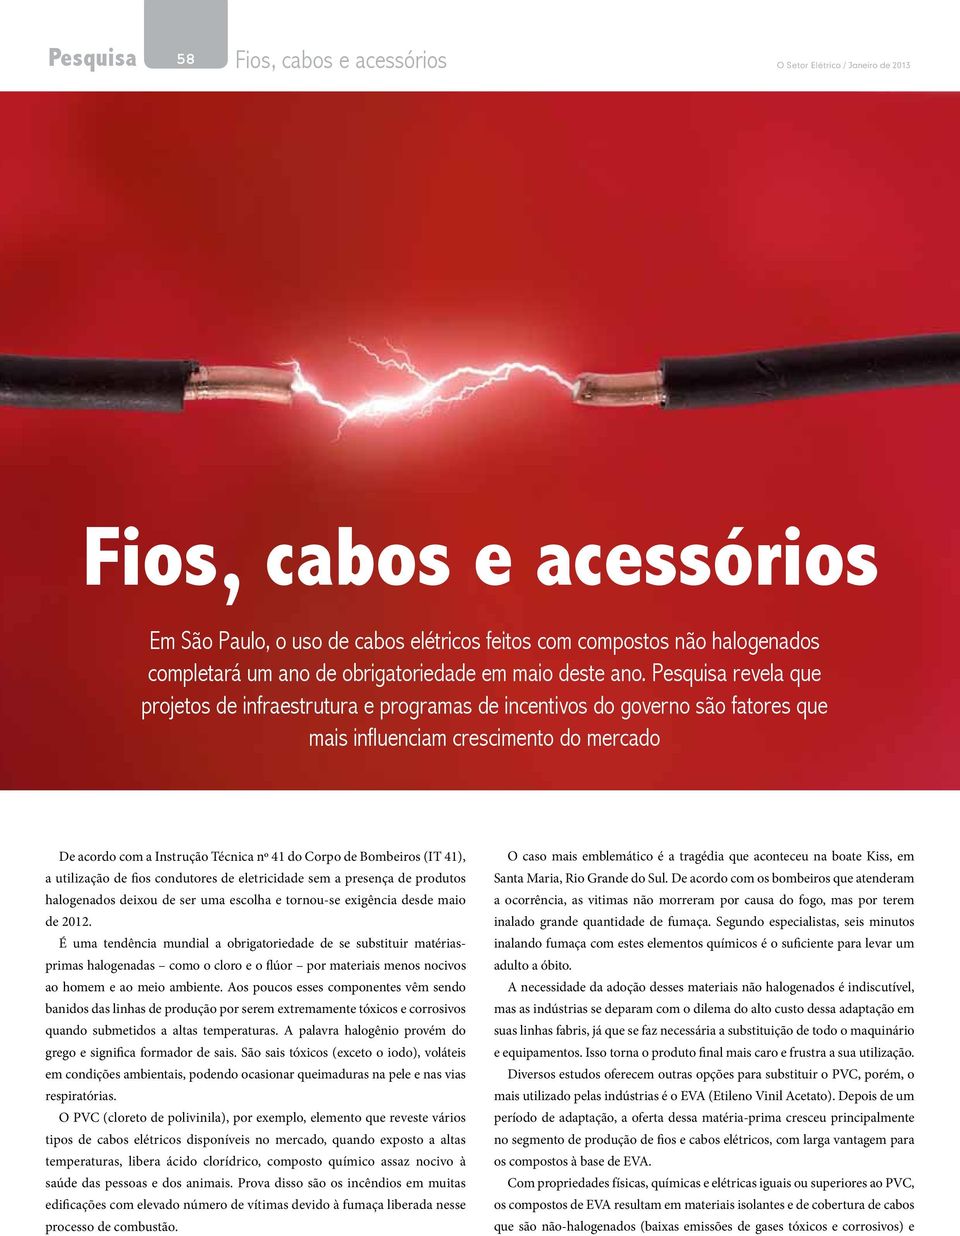 Bombeiros (IT 41), a utilização de fios condutores de eletricidade sem a presença de produtos halogenados deixou de ser uma escolha e tornou-se exigência desde maio de 2012.